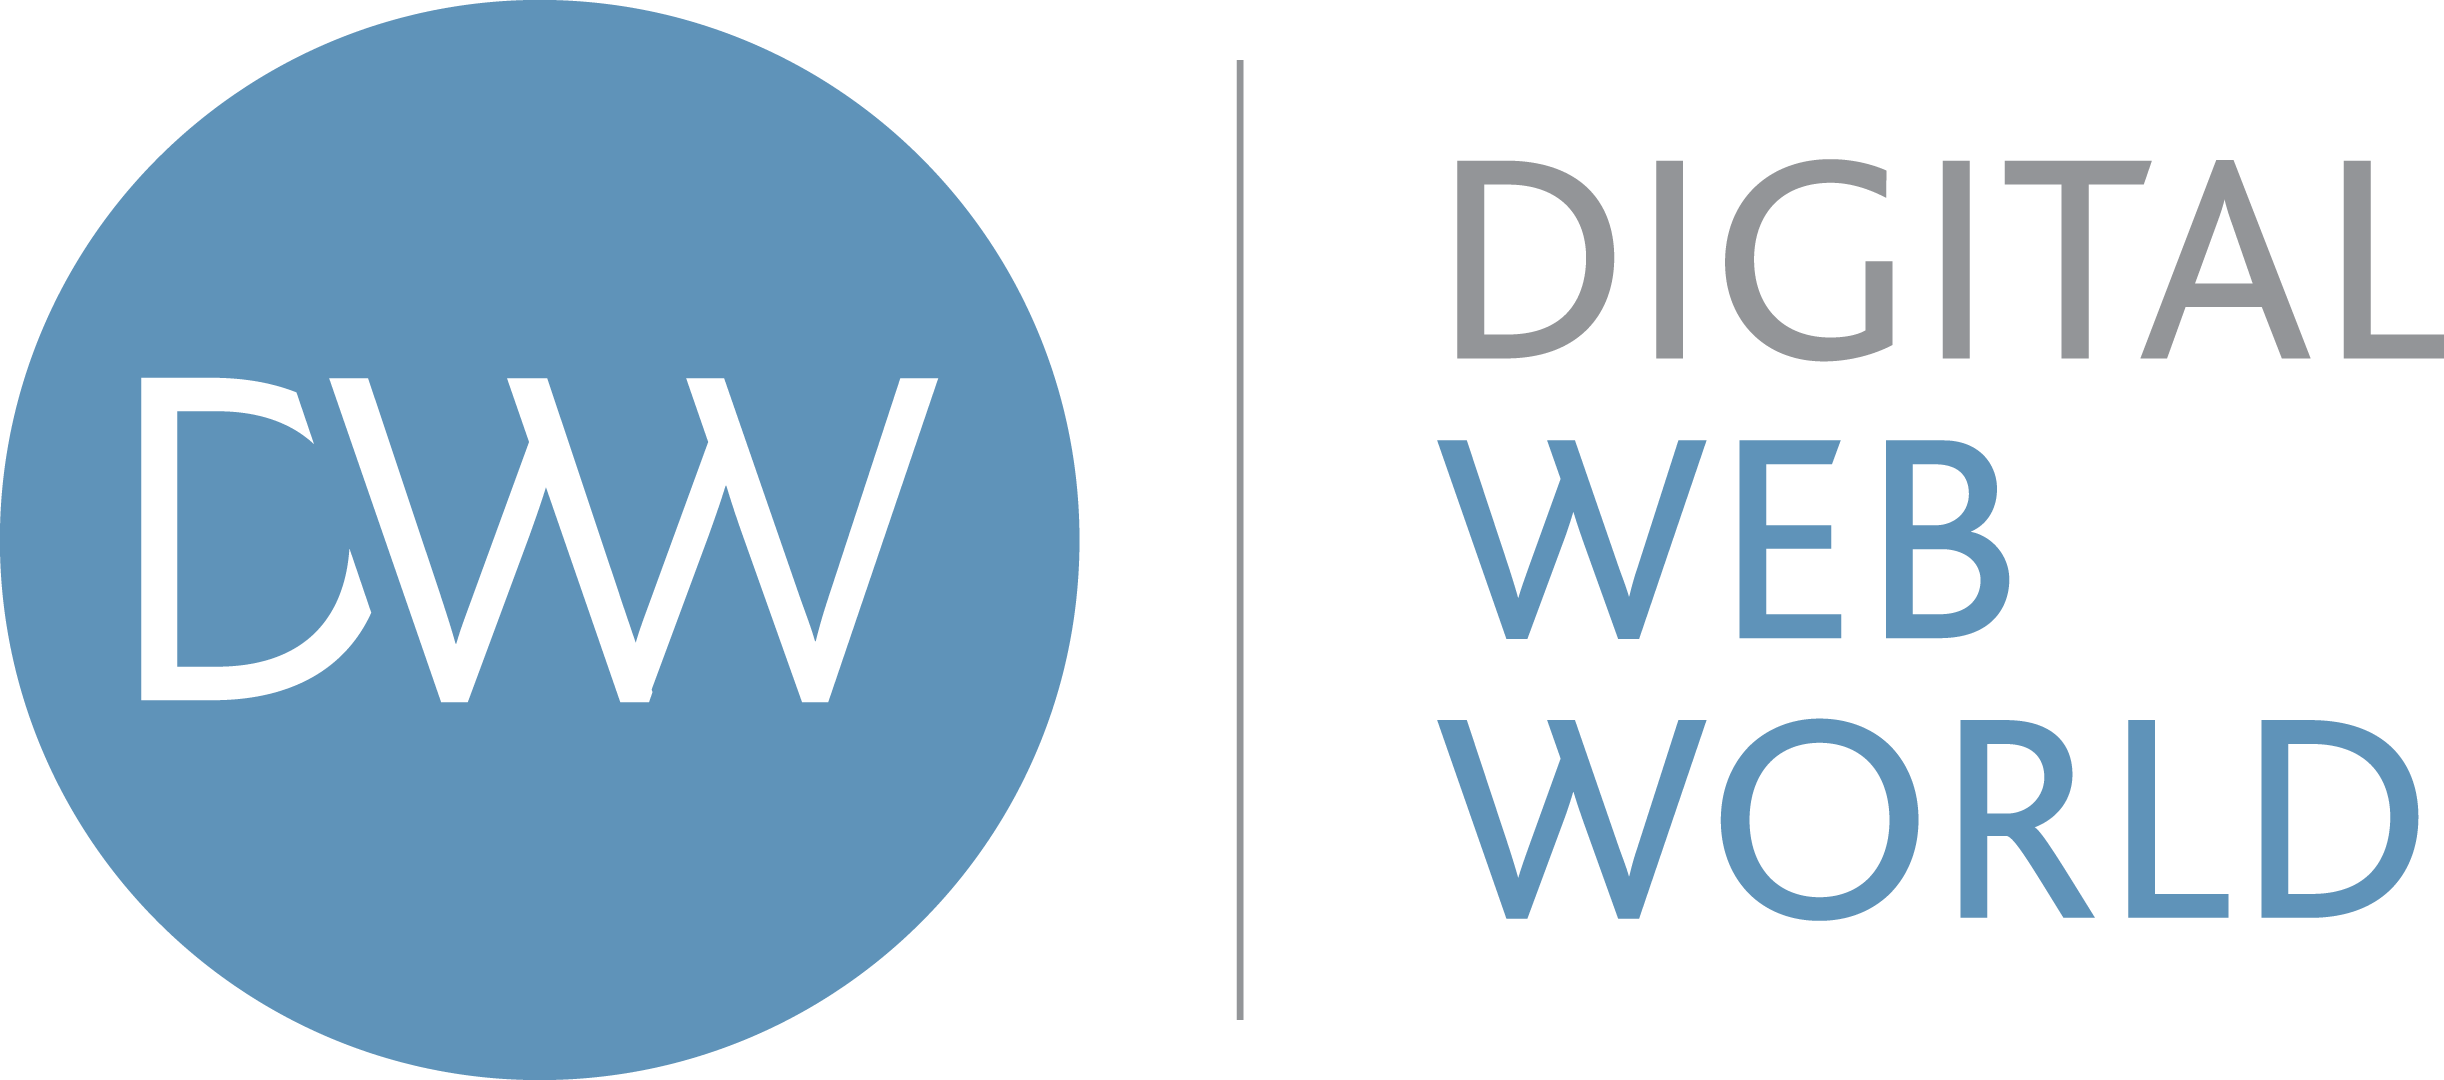 Web Digital Logo - Digital Marketing Agency In Brighton. Digital Web World